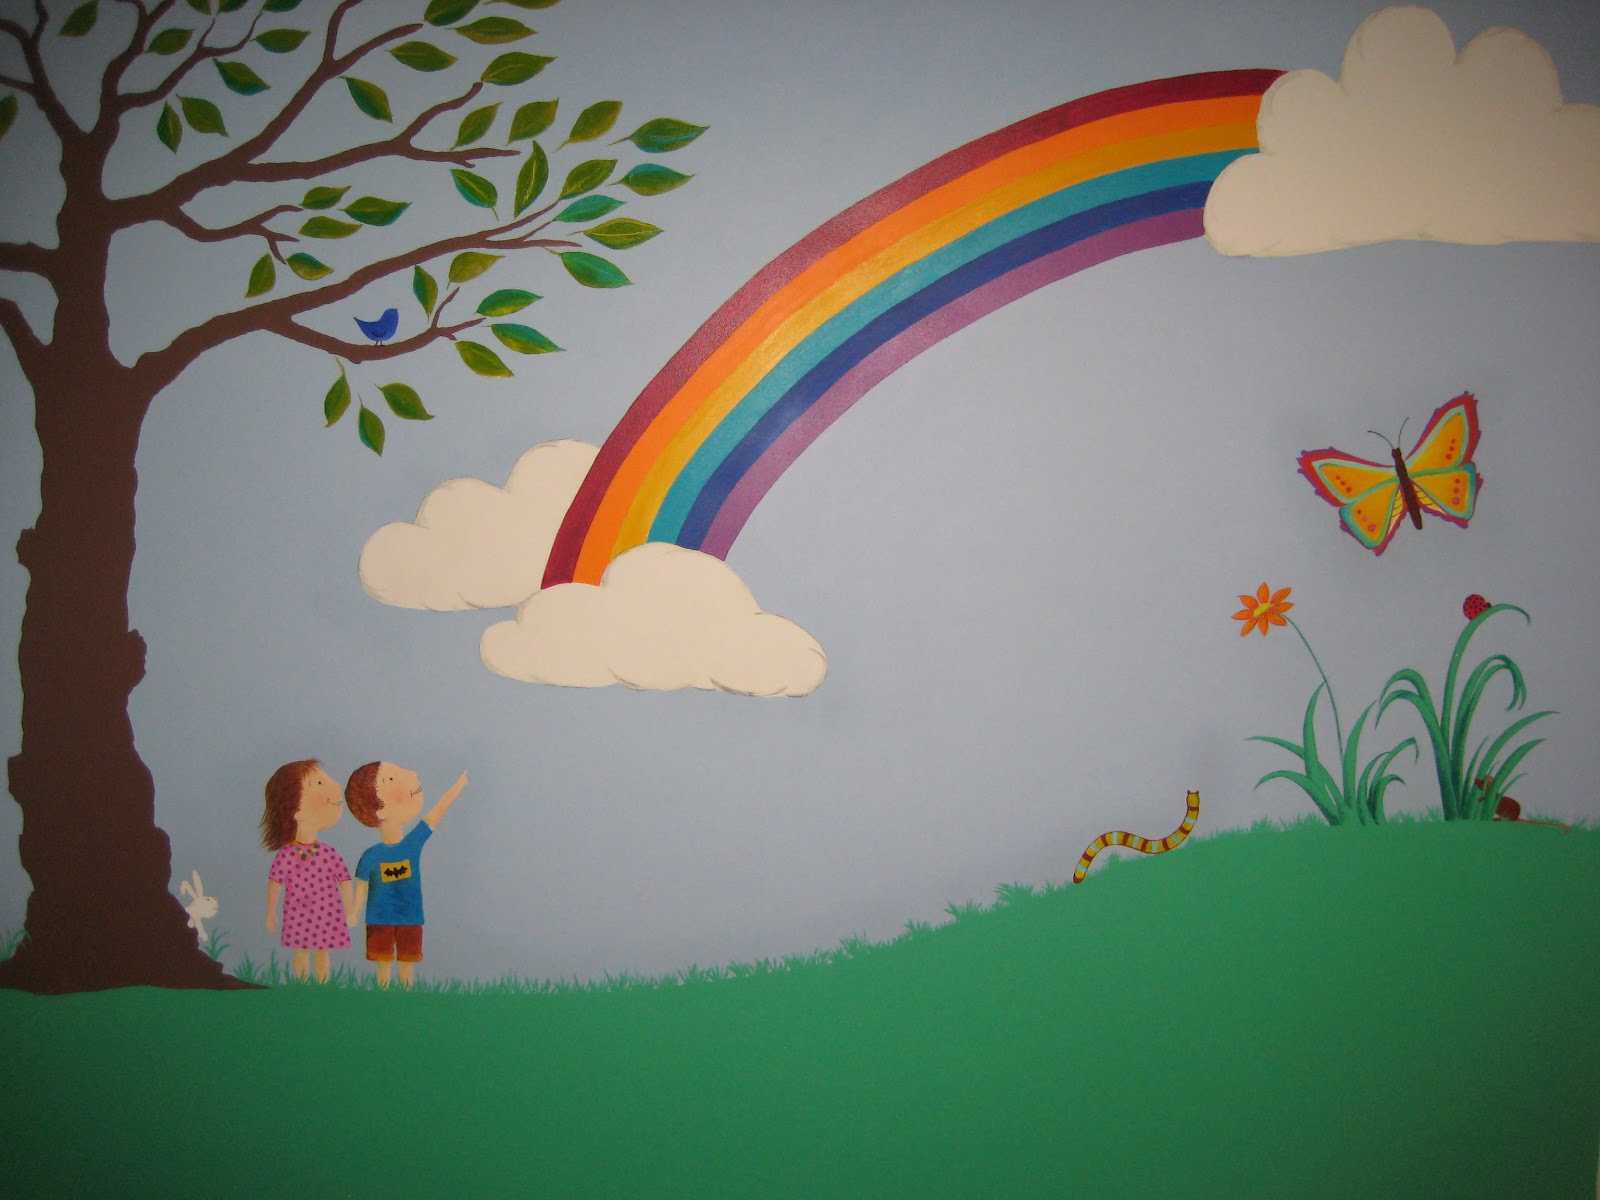 Радуга на стене в детском саду